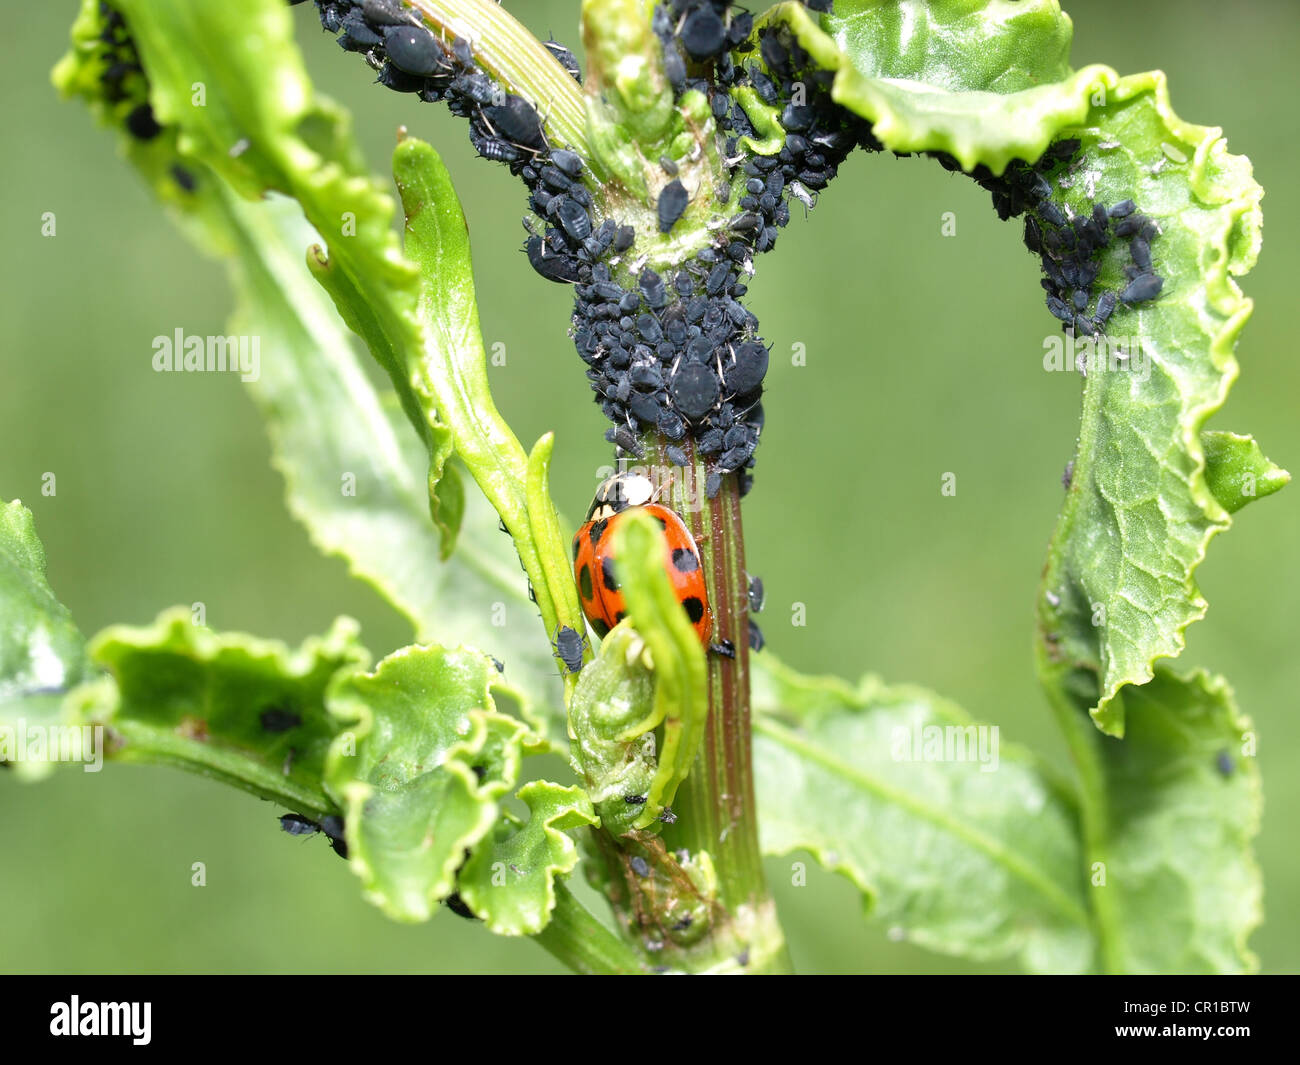 Marienkäfer mit Mückenart, schwarze Bohne Blattläuse an einer Pflanze / Marienkäfer Mit Jugendbuchklassikers Bohnenläusen ein Einer Pflanze Stockfoto